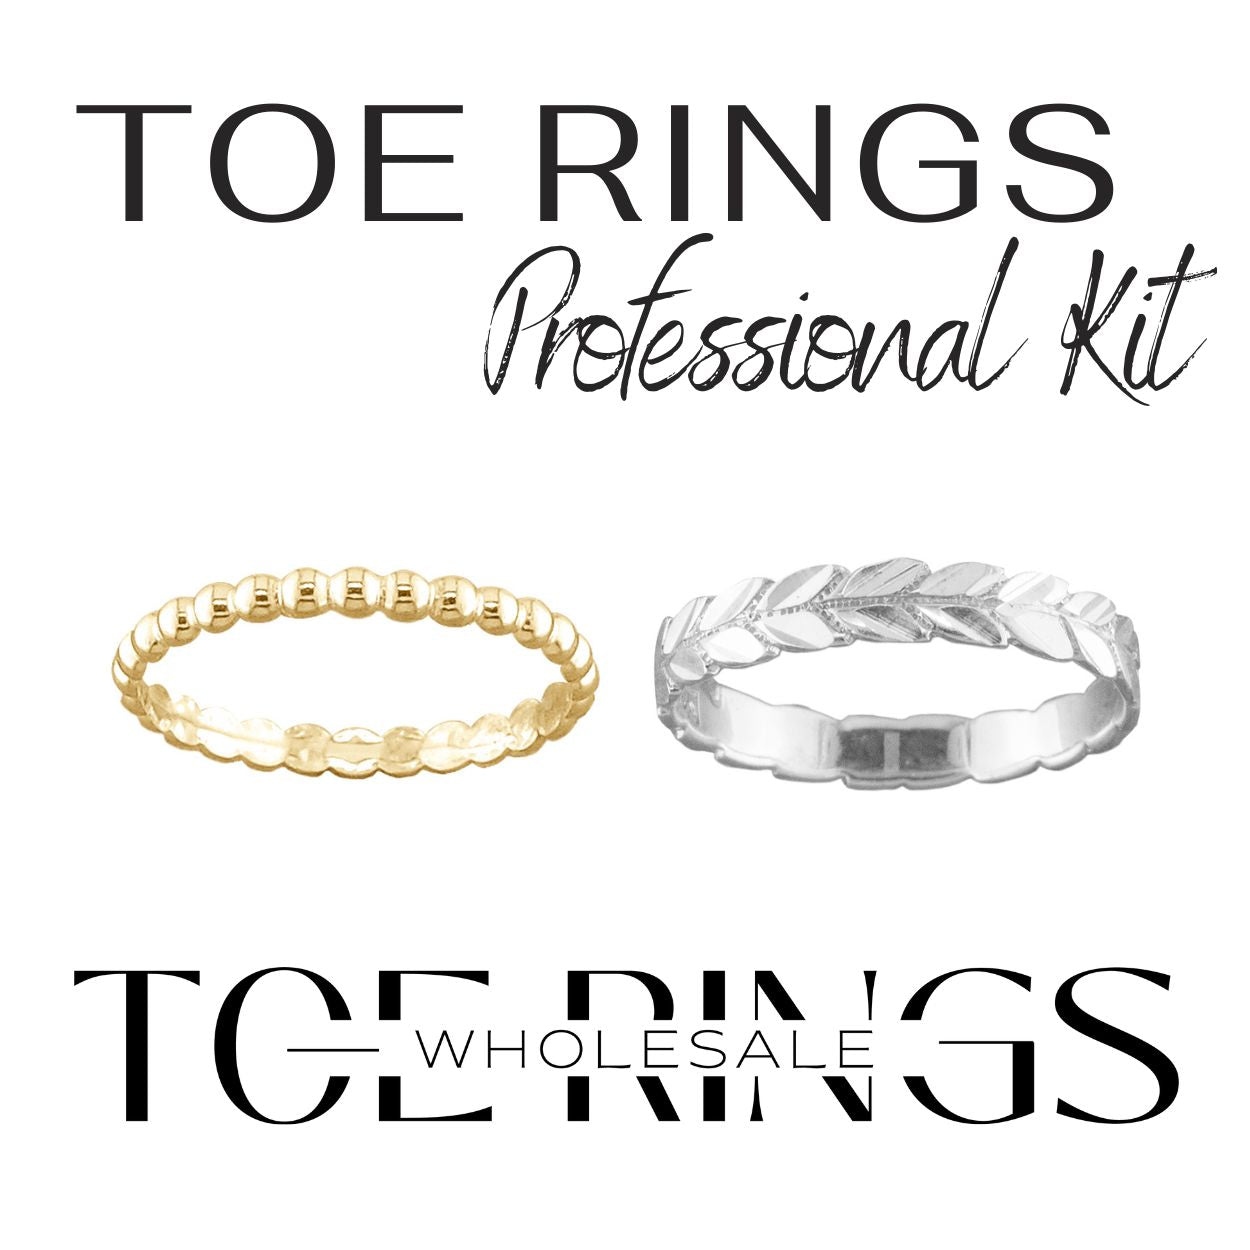 Toe Ring Professional Kit - Wholesale Kit